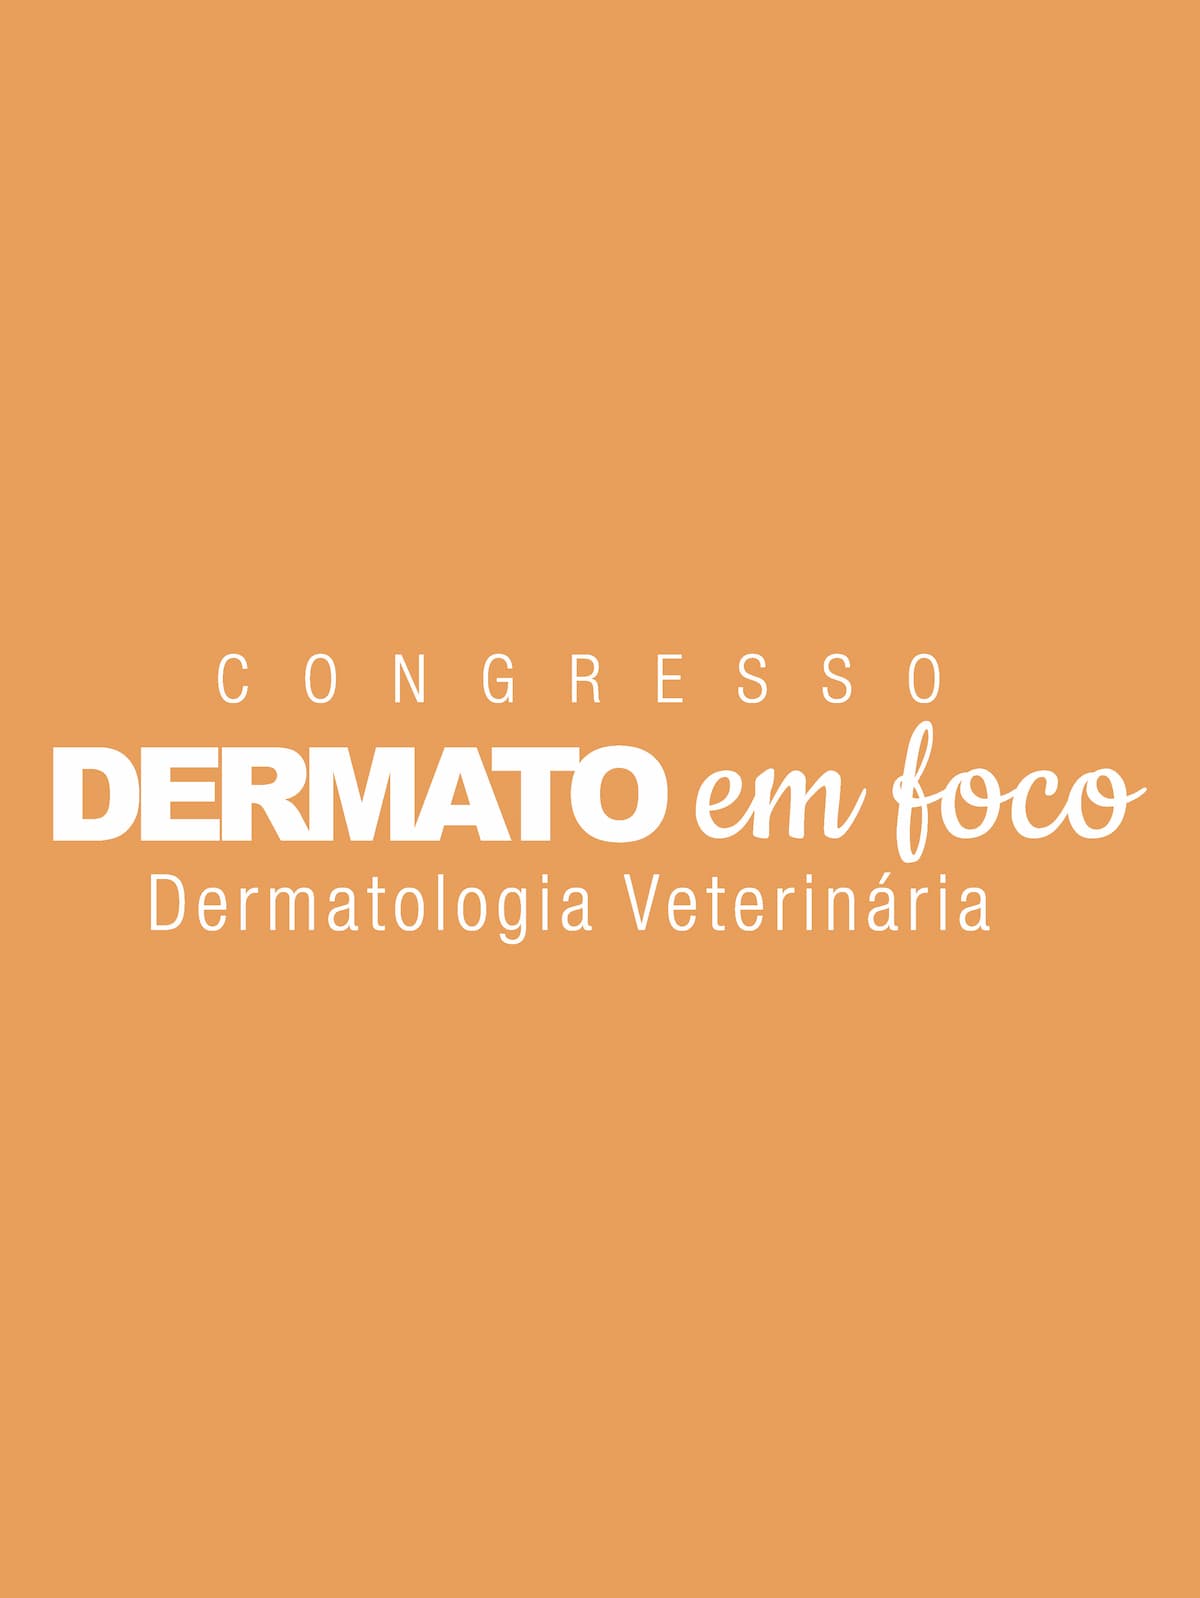 Congresso Dermato em Foco Veterinários 